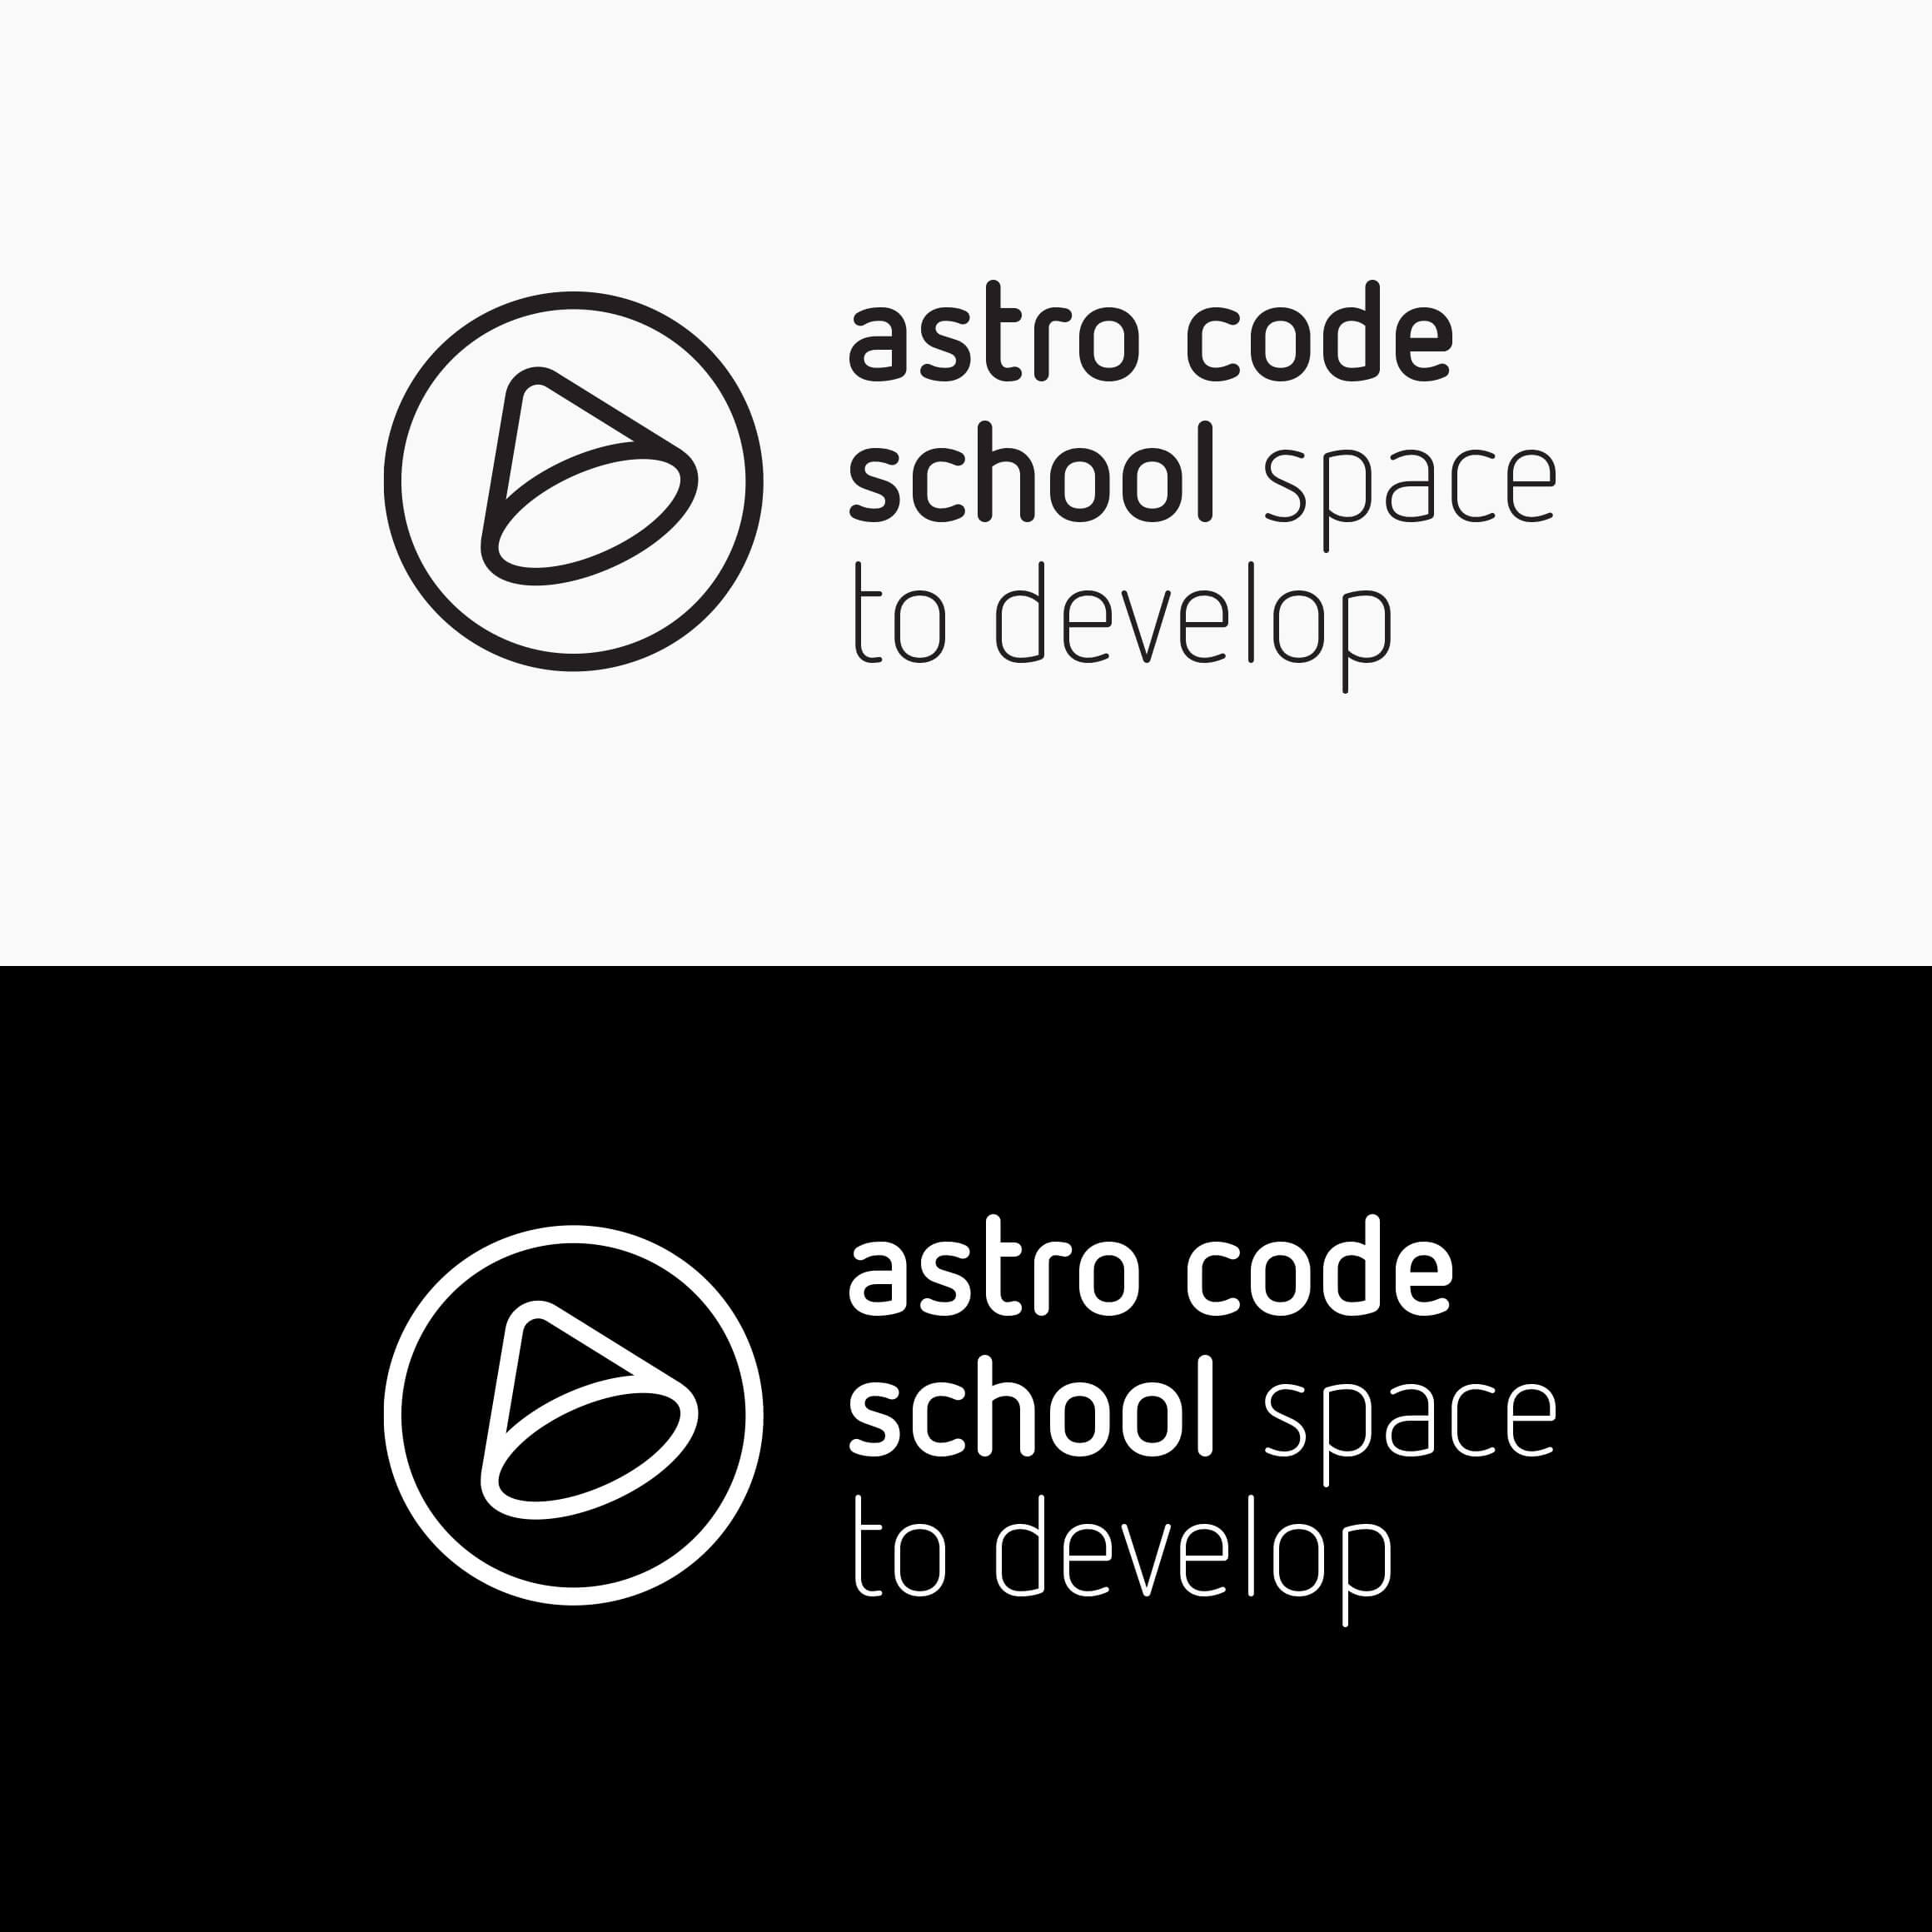 astro code school logo and tagline